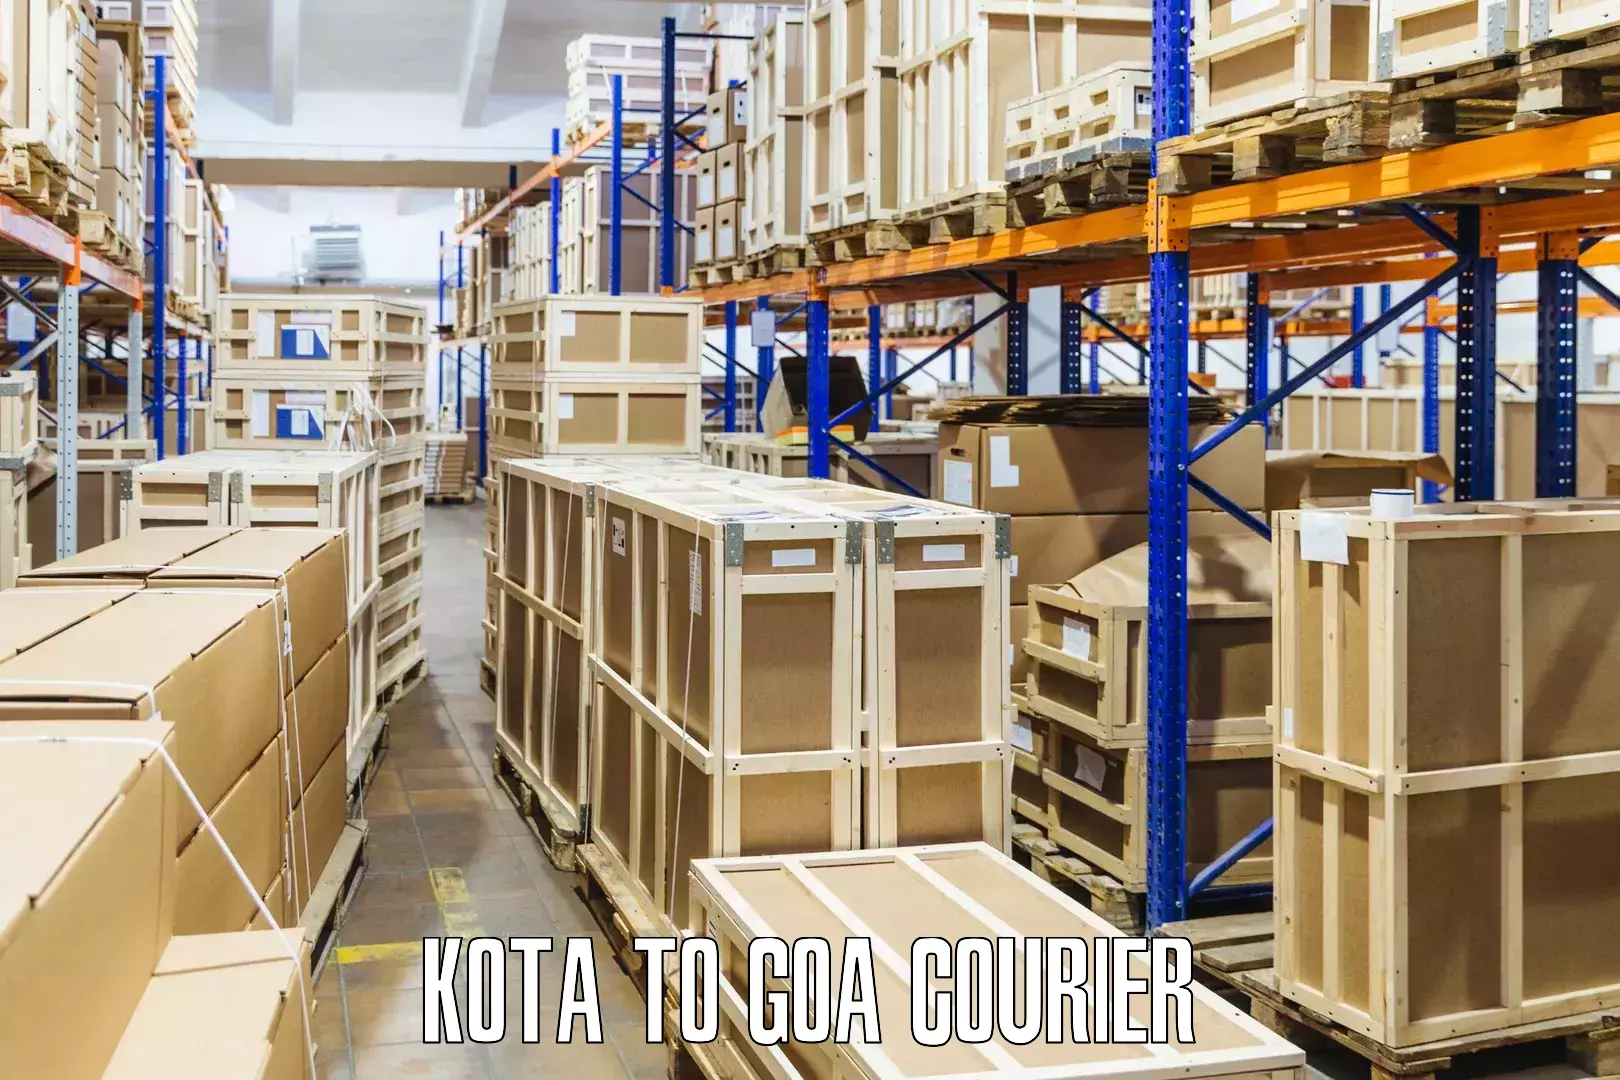 Rapid shipping services Kota to IIT Goa